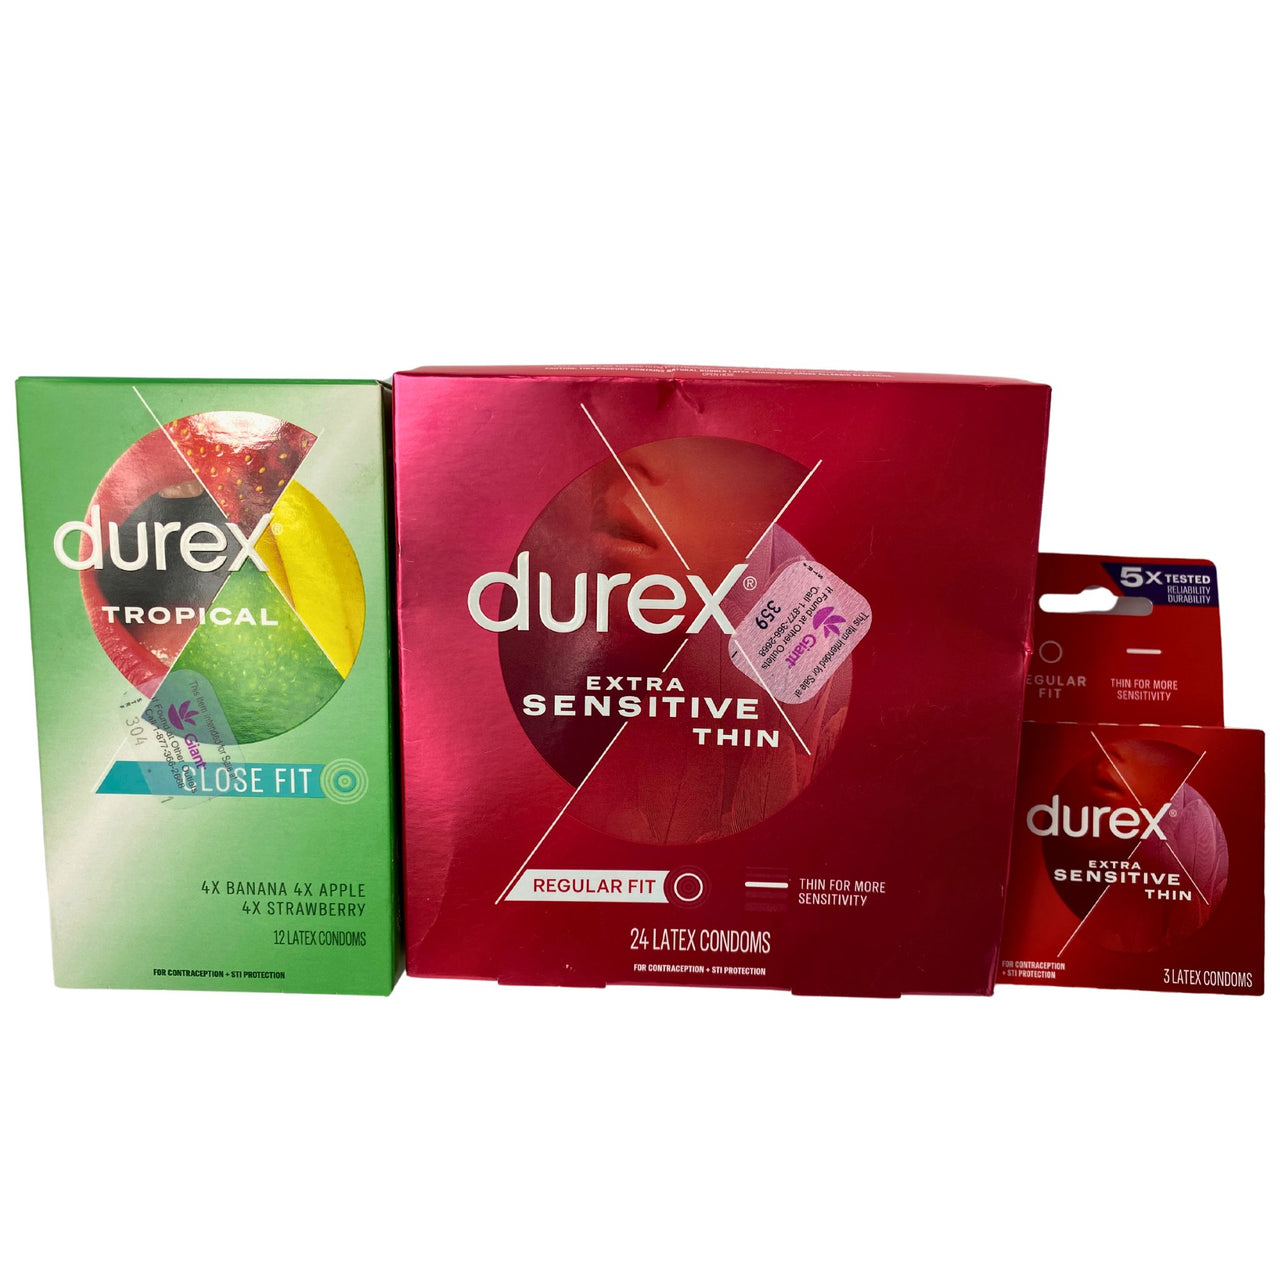 Durex Assorted Mix (50 Pcs Lot)